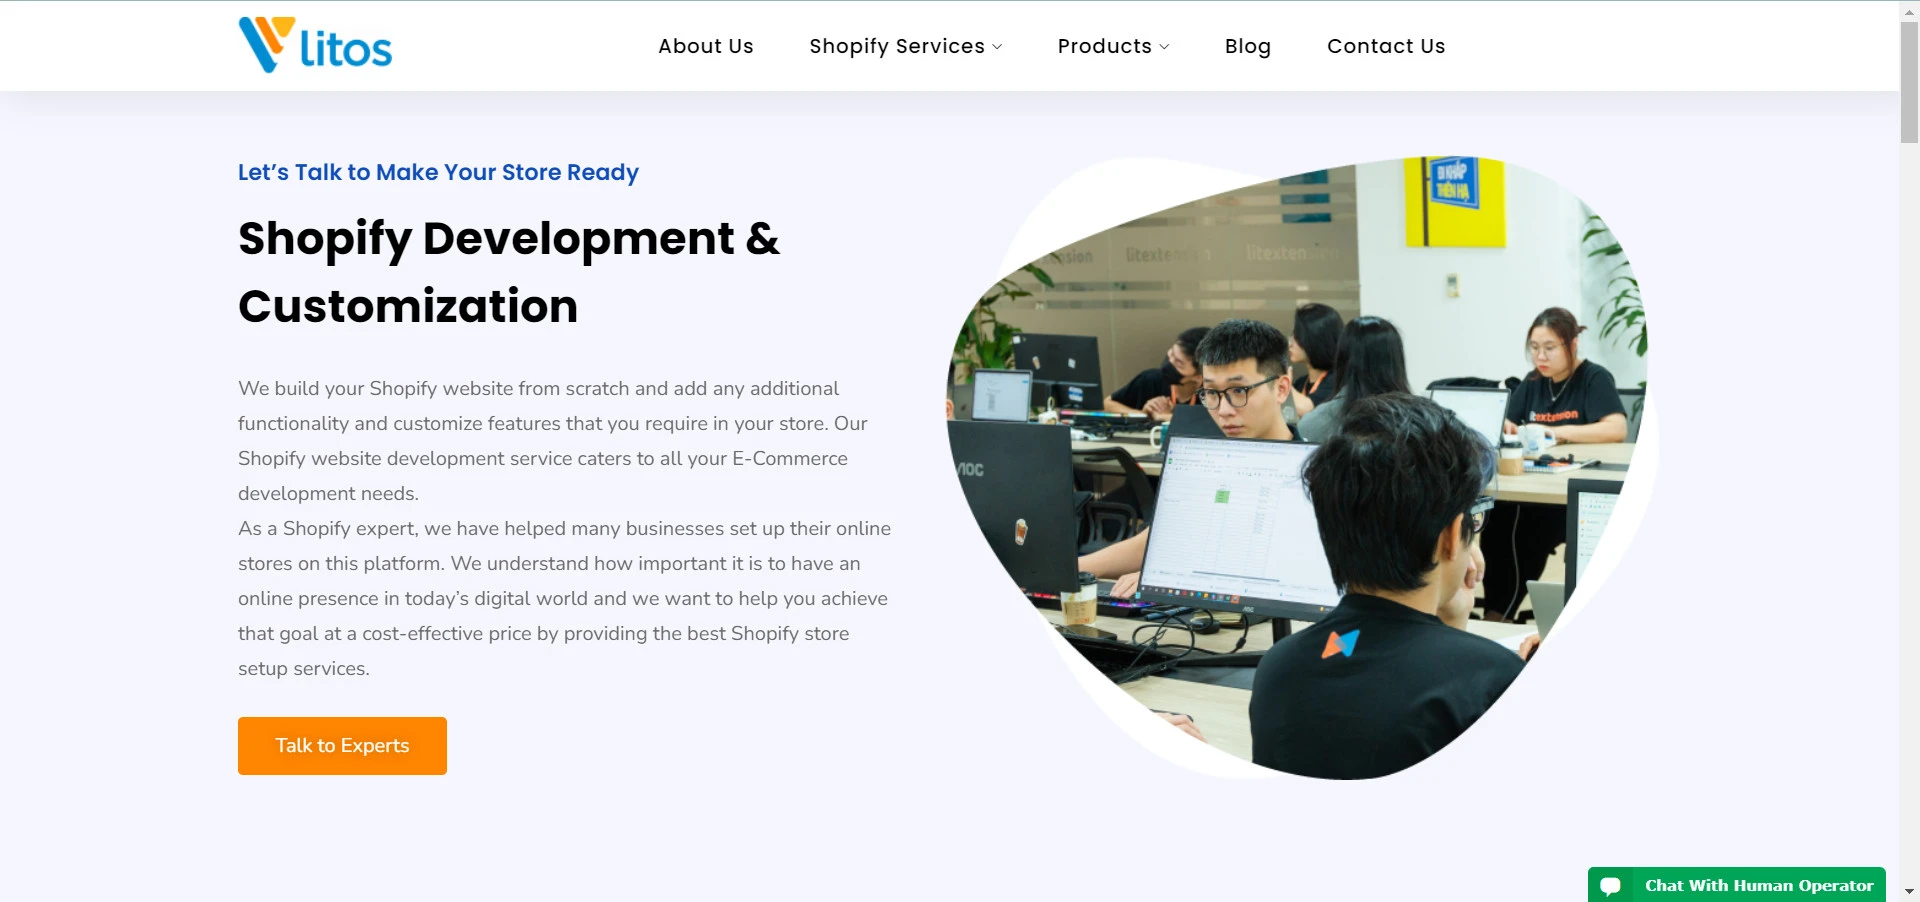 Litos’s Shopify Website Development Service